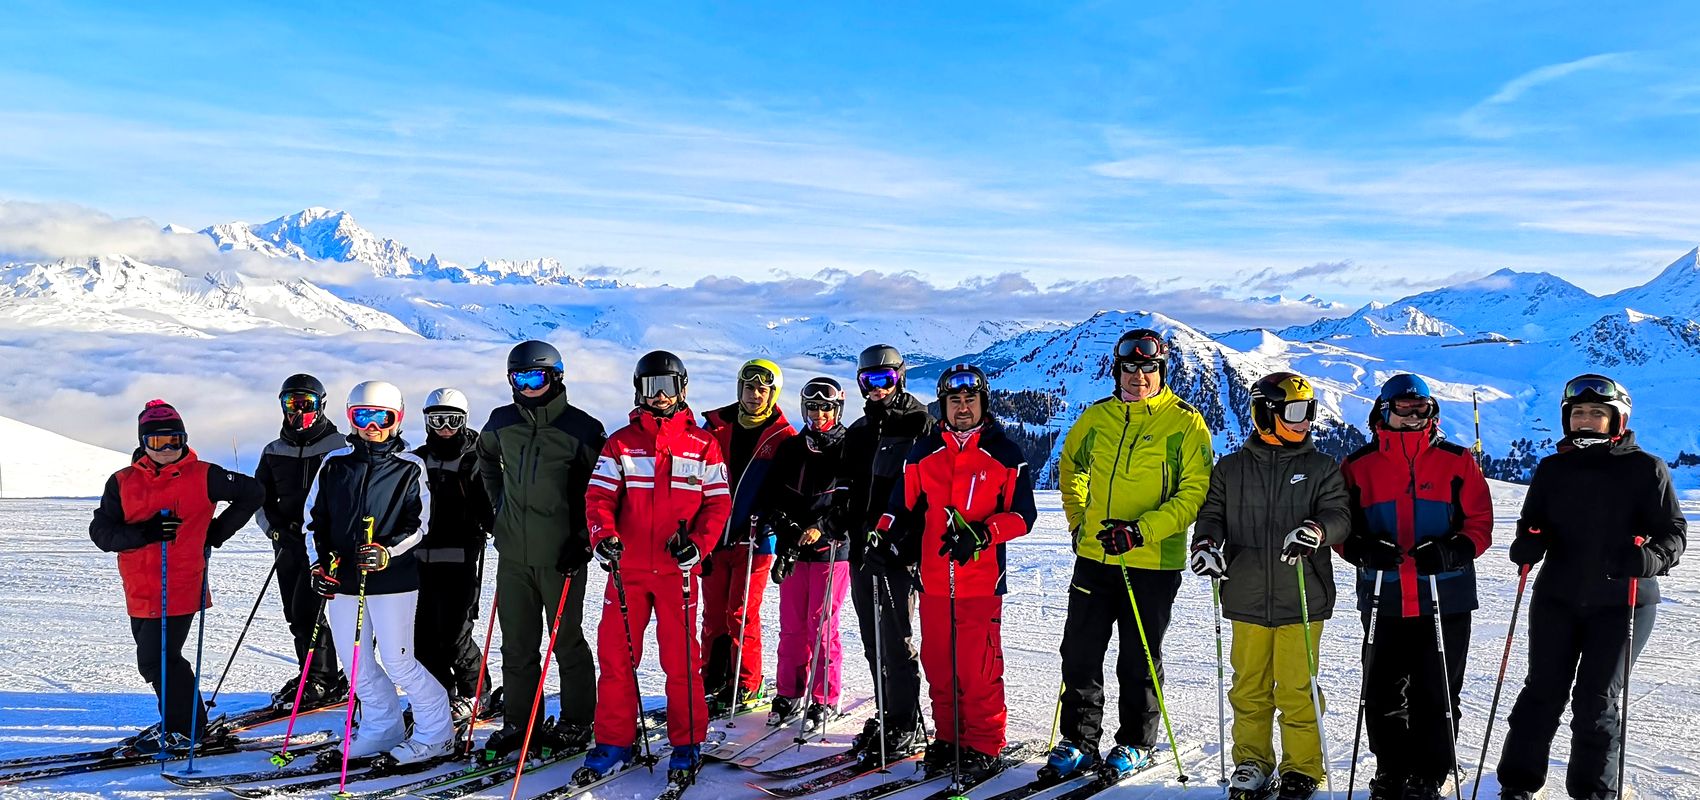 Cours de ski collectif Enfants/Ados - Journée